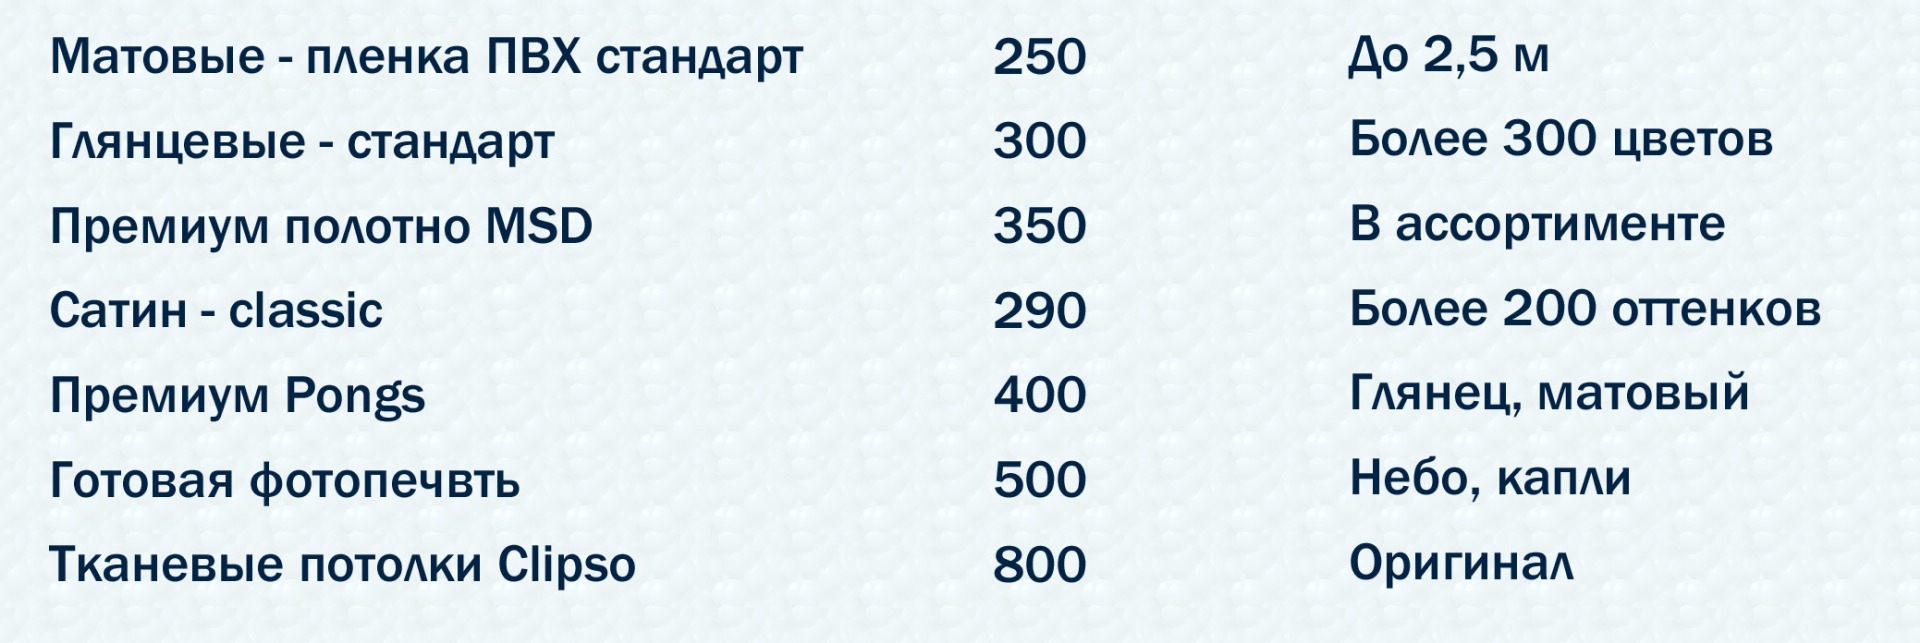 Установка натяжных потолков в Лабинске - цены 